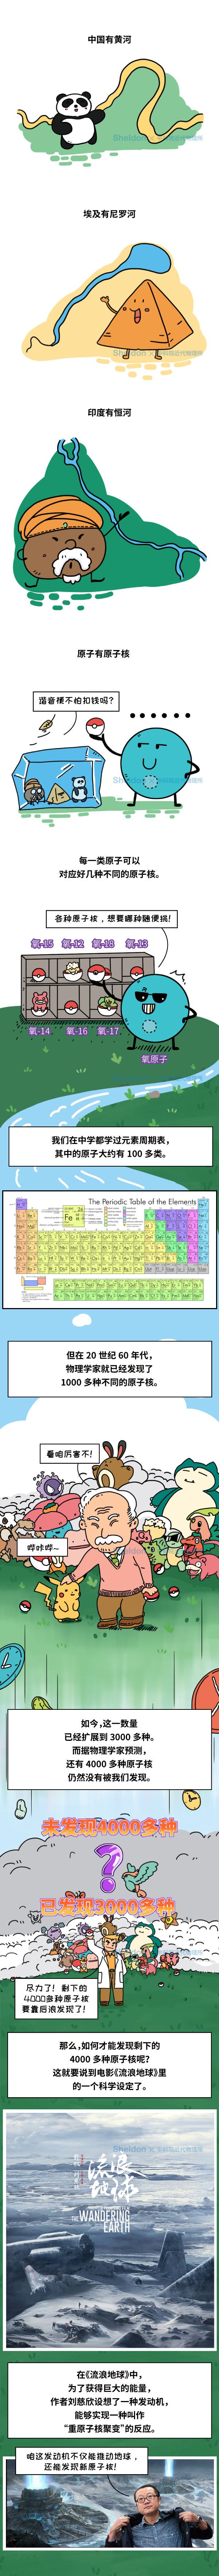 漫画 震惊 中学的元素周期表还藏着4000多种 元素周期表 中国科学技术大学 Mirror